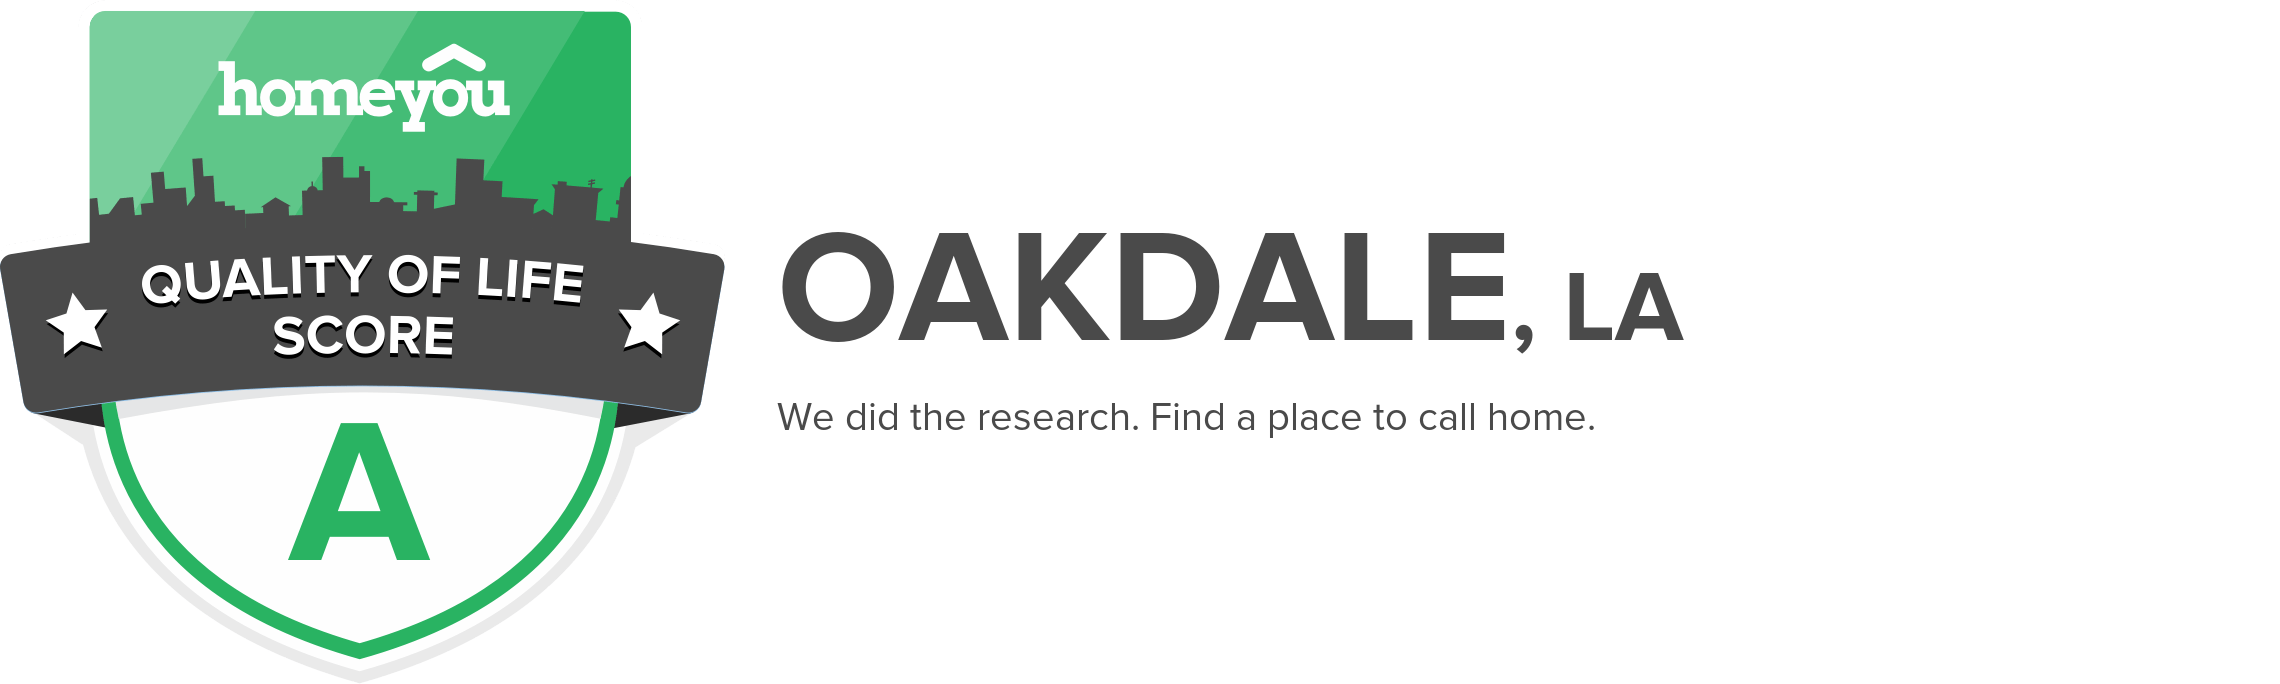 Oakdale, LA